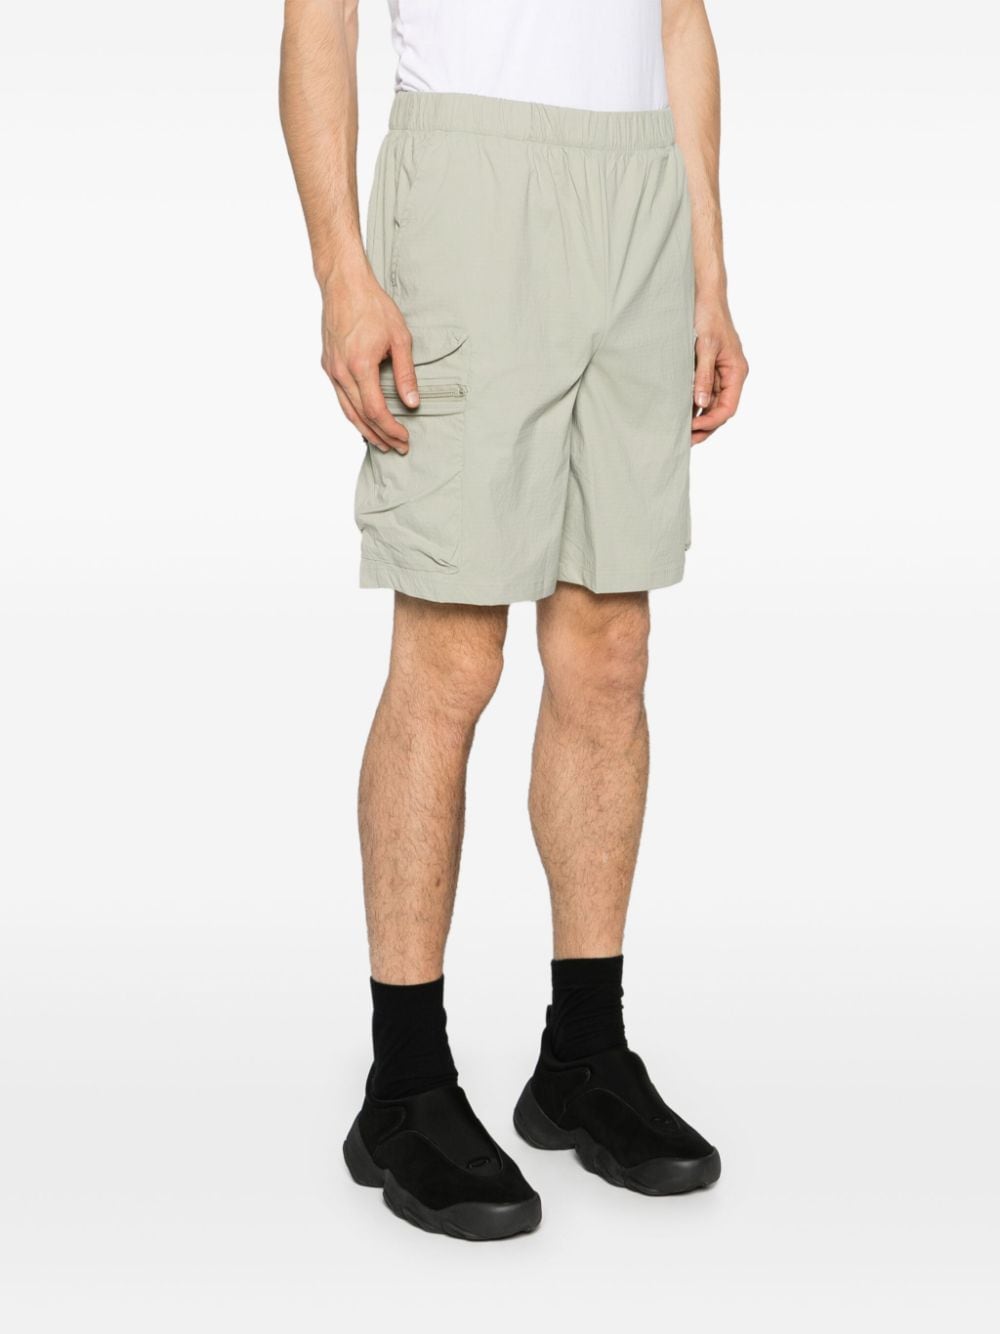 Sage green Bermuda shorts with pockets